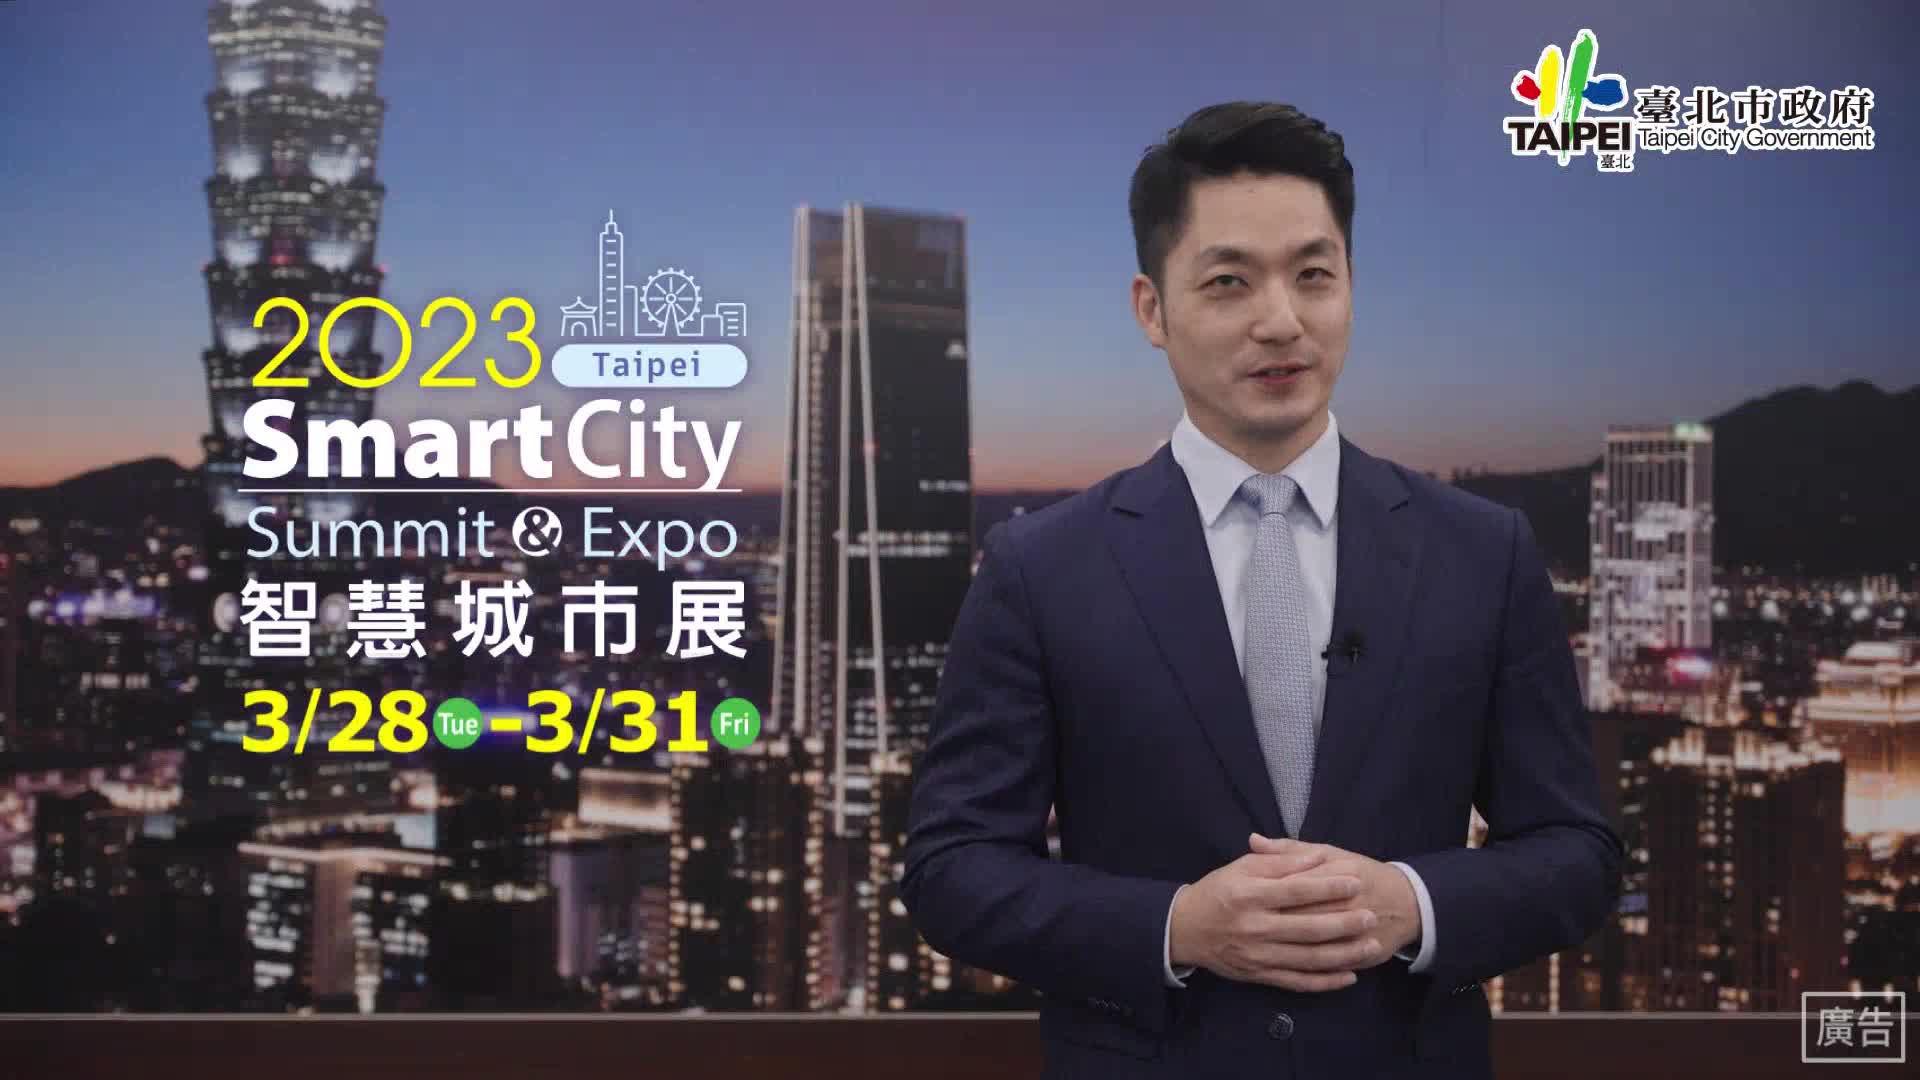 2023智慧城市展市長宣傳影片